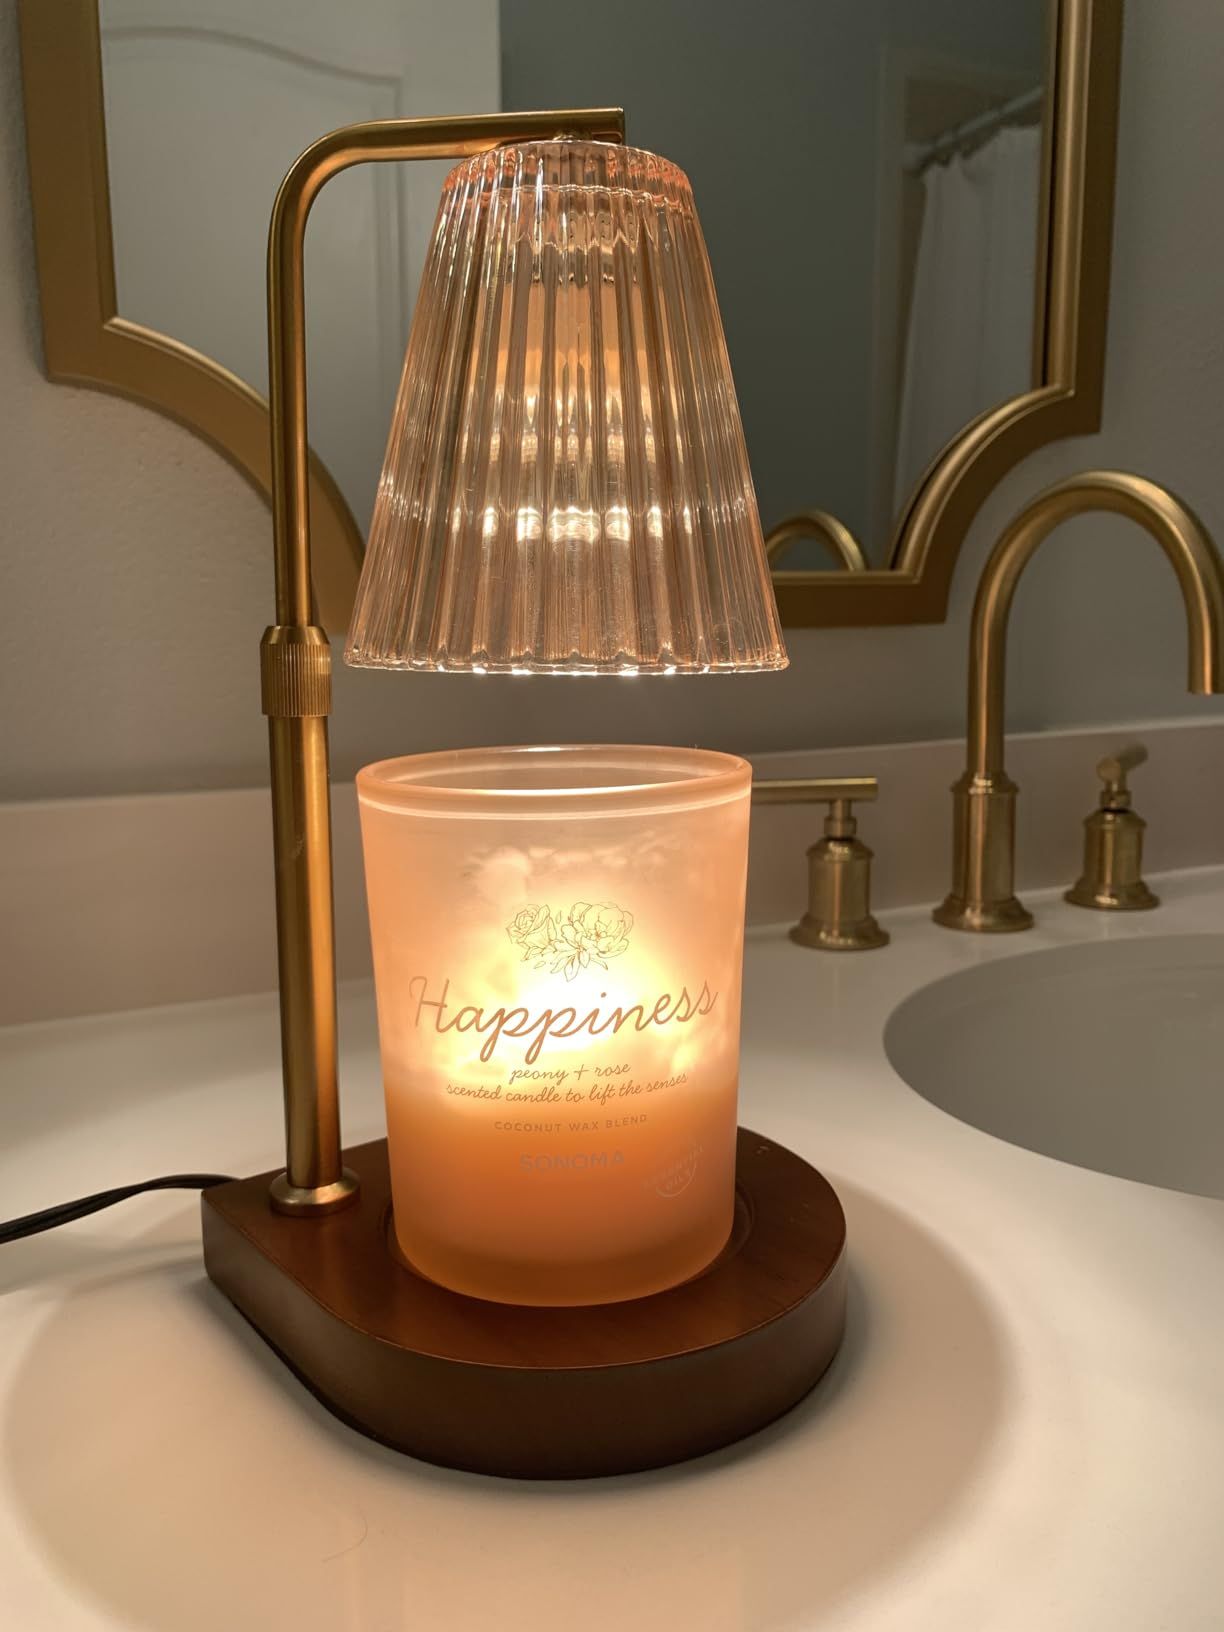 DEIDEAL Candle Warmer Lamp with 2 Bulbs, Modern Glass Candle Lamp Warmer with Timer & Dimmer, Hei... | Amazon (US)